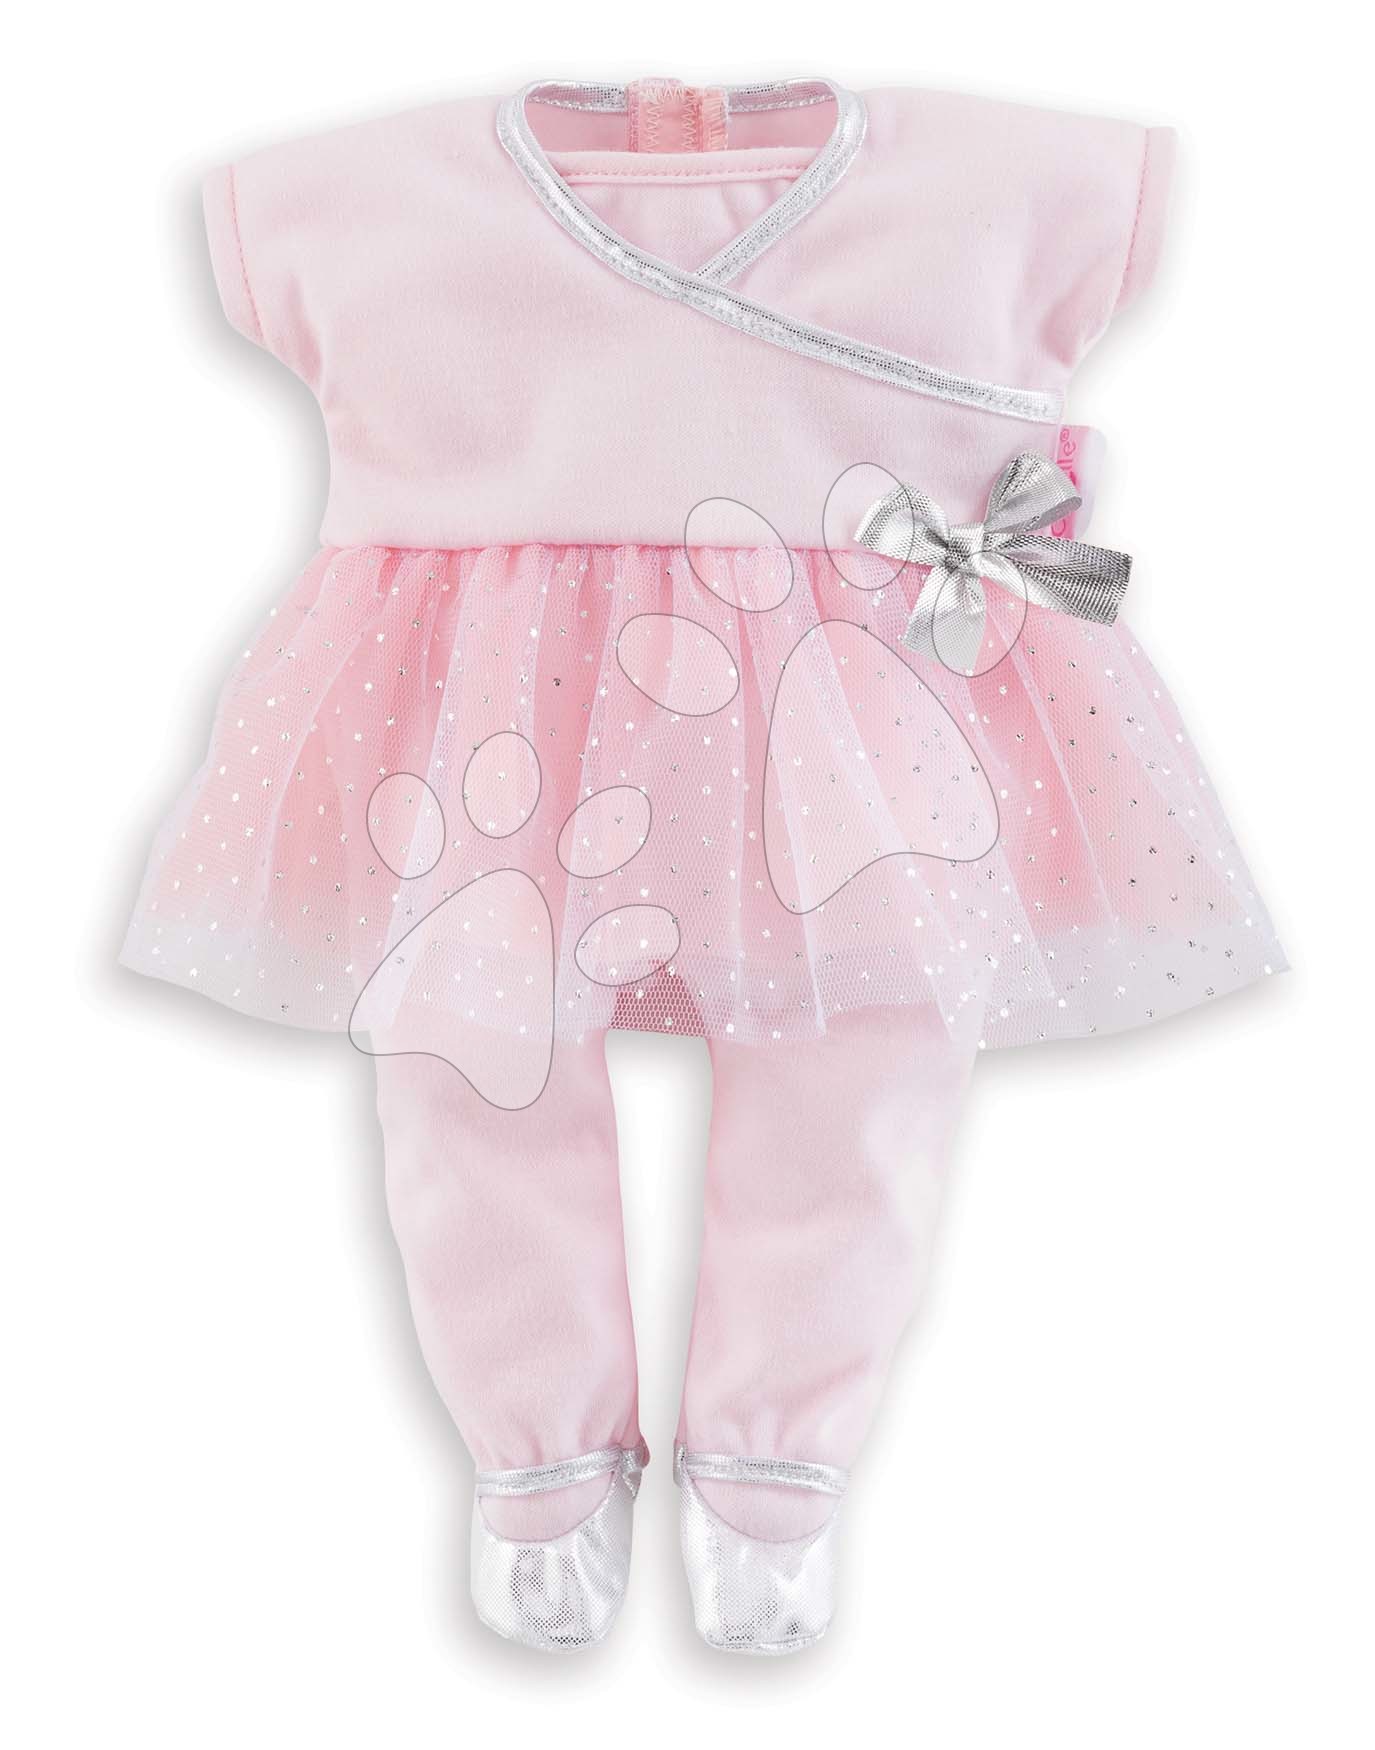 Oblečenie pre bábiky - Oblečenie Sport Dance Set Mon Grand Poupon Corolle pre 36 cm bábiku od 24 mes